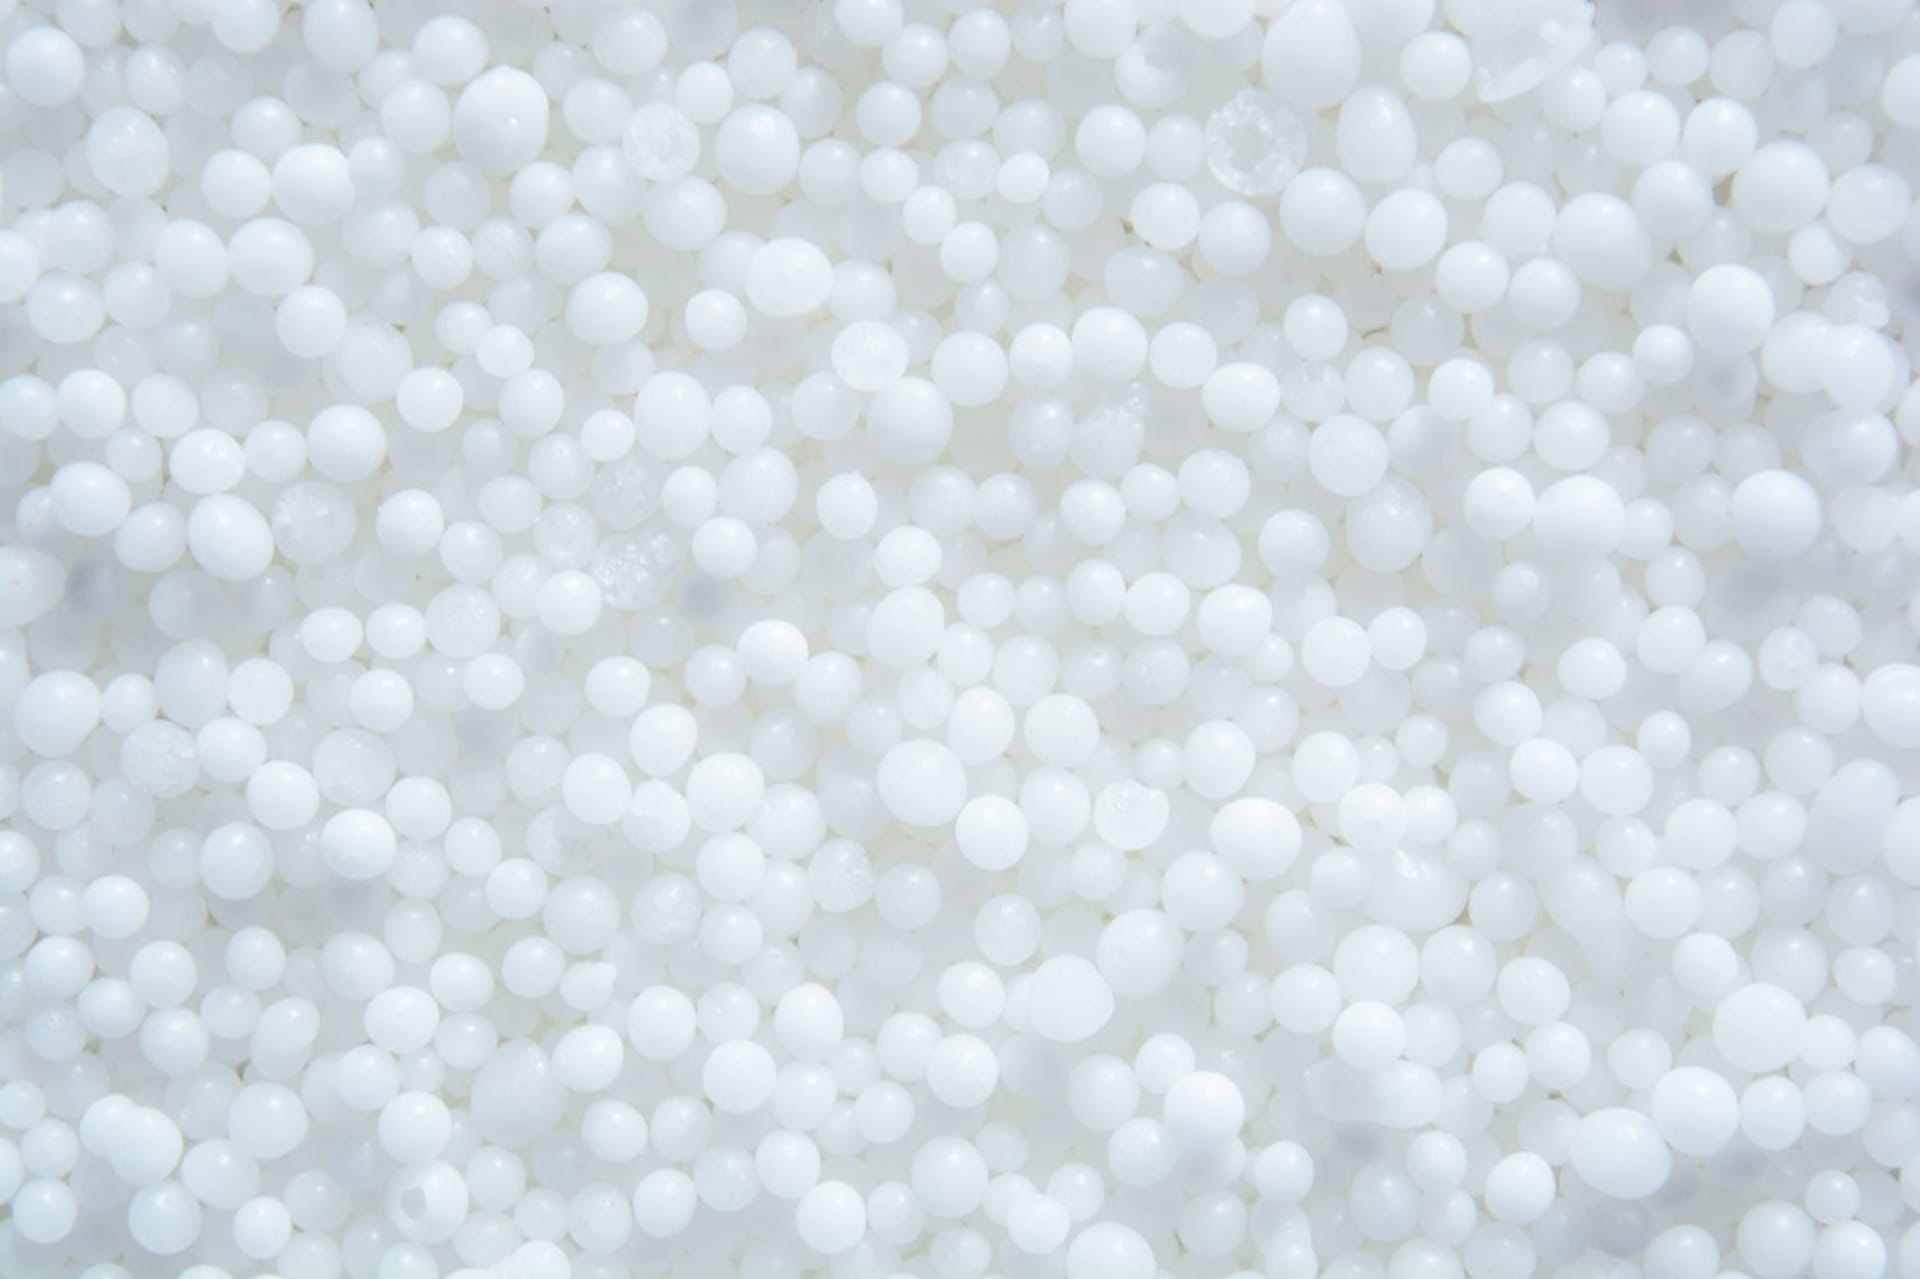 Dusičnan amonný je bílá krystalická látka silně pohlcující vzdušnou vlhkost. 